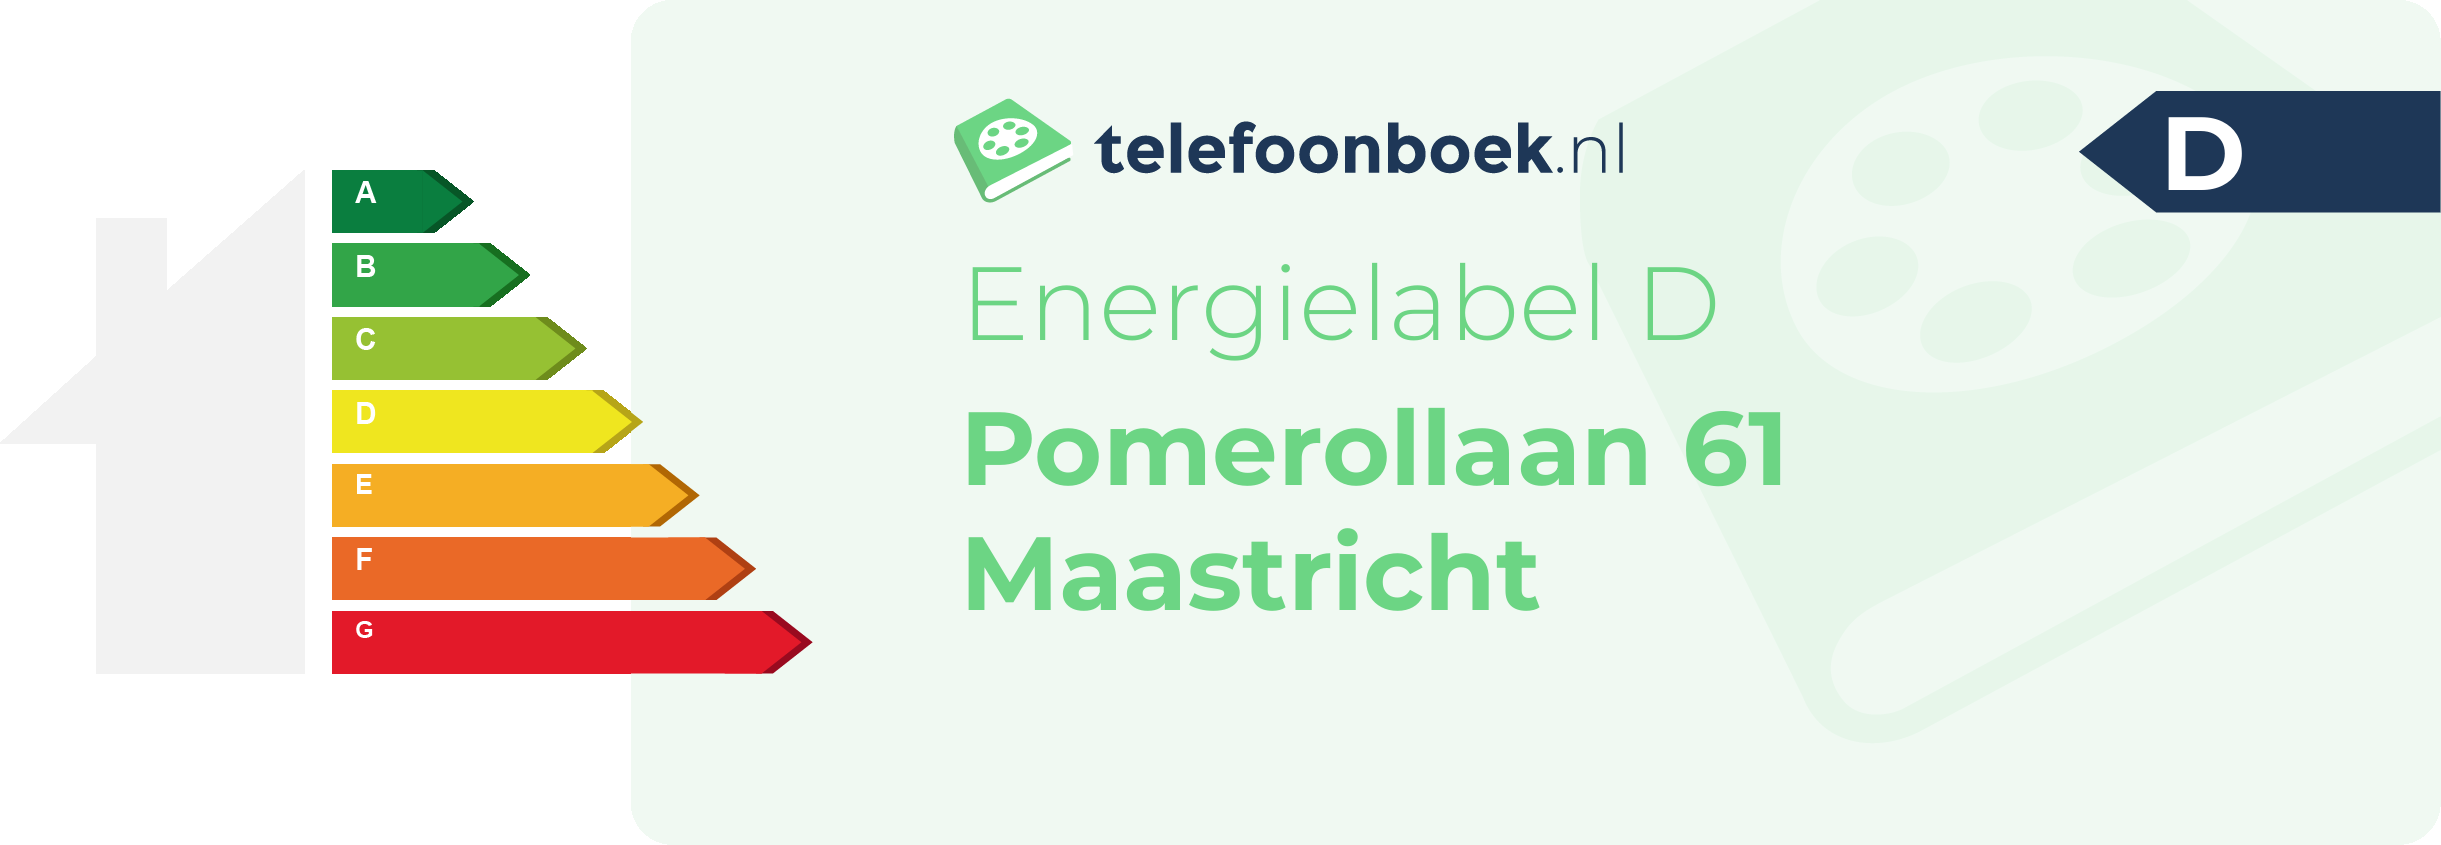 Energielabel Pomerollaan 61 Maastricht